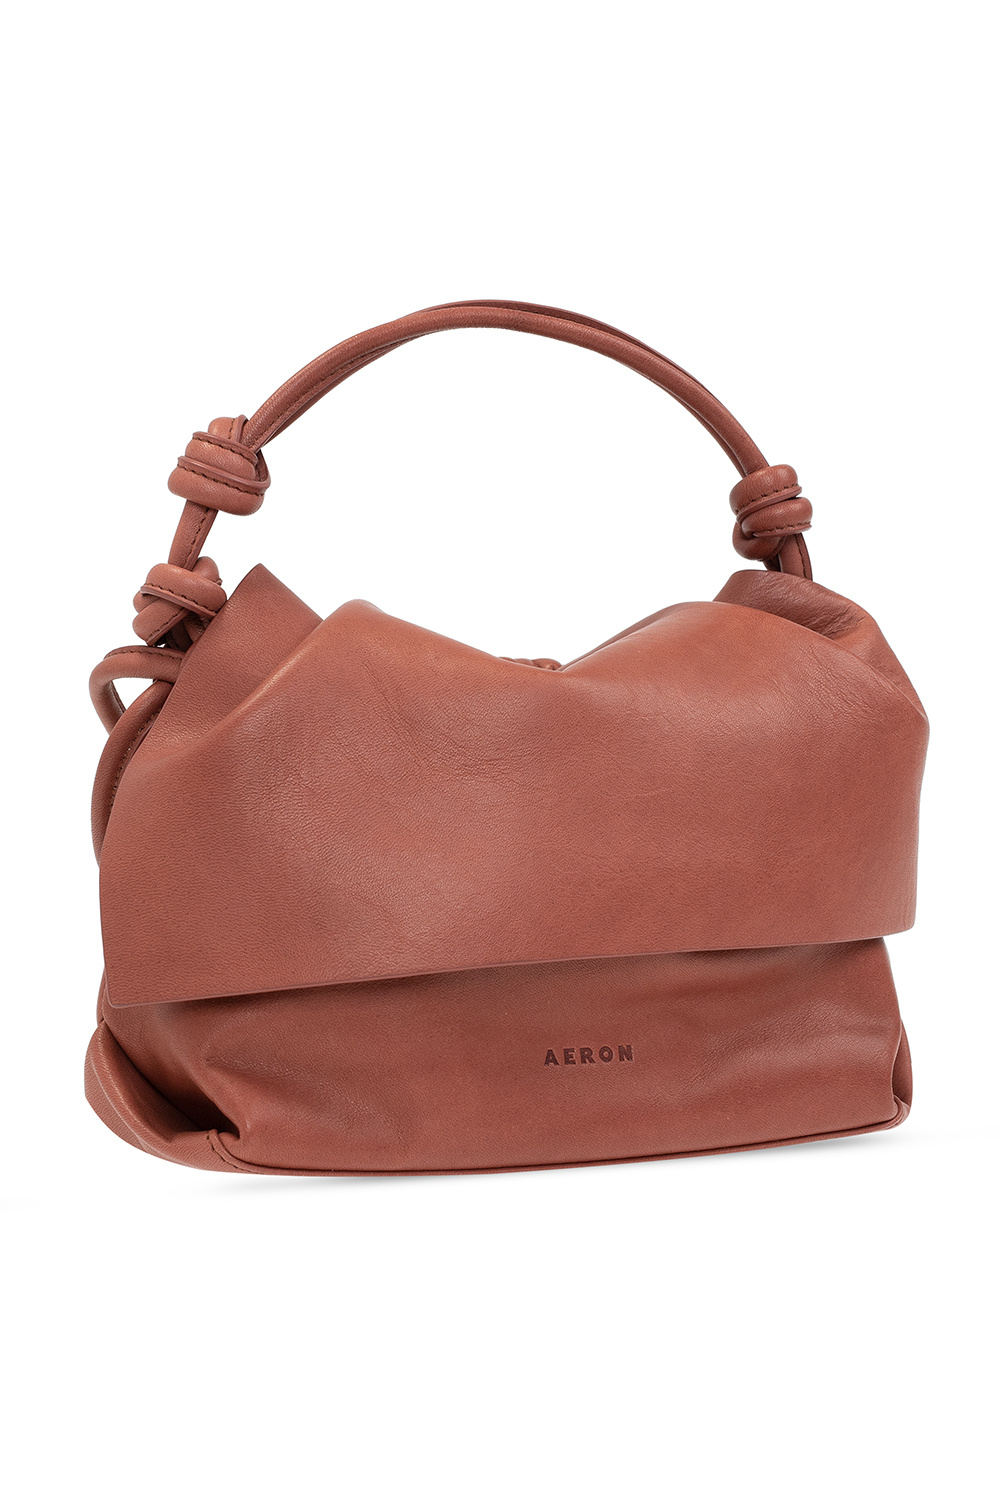 Aeron ‘Neru Mini’ hobo shoulder bag